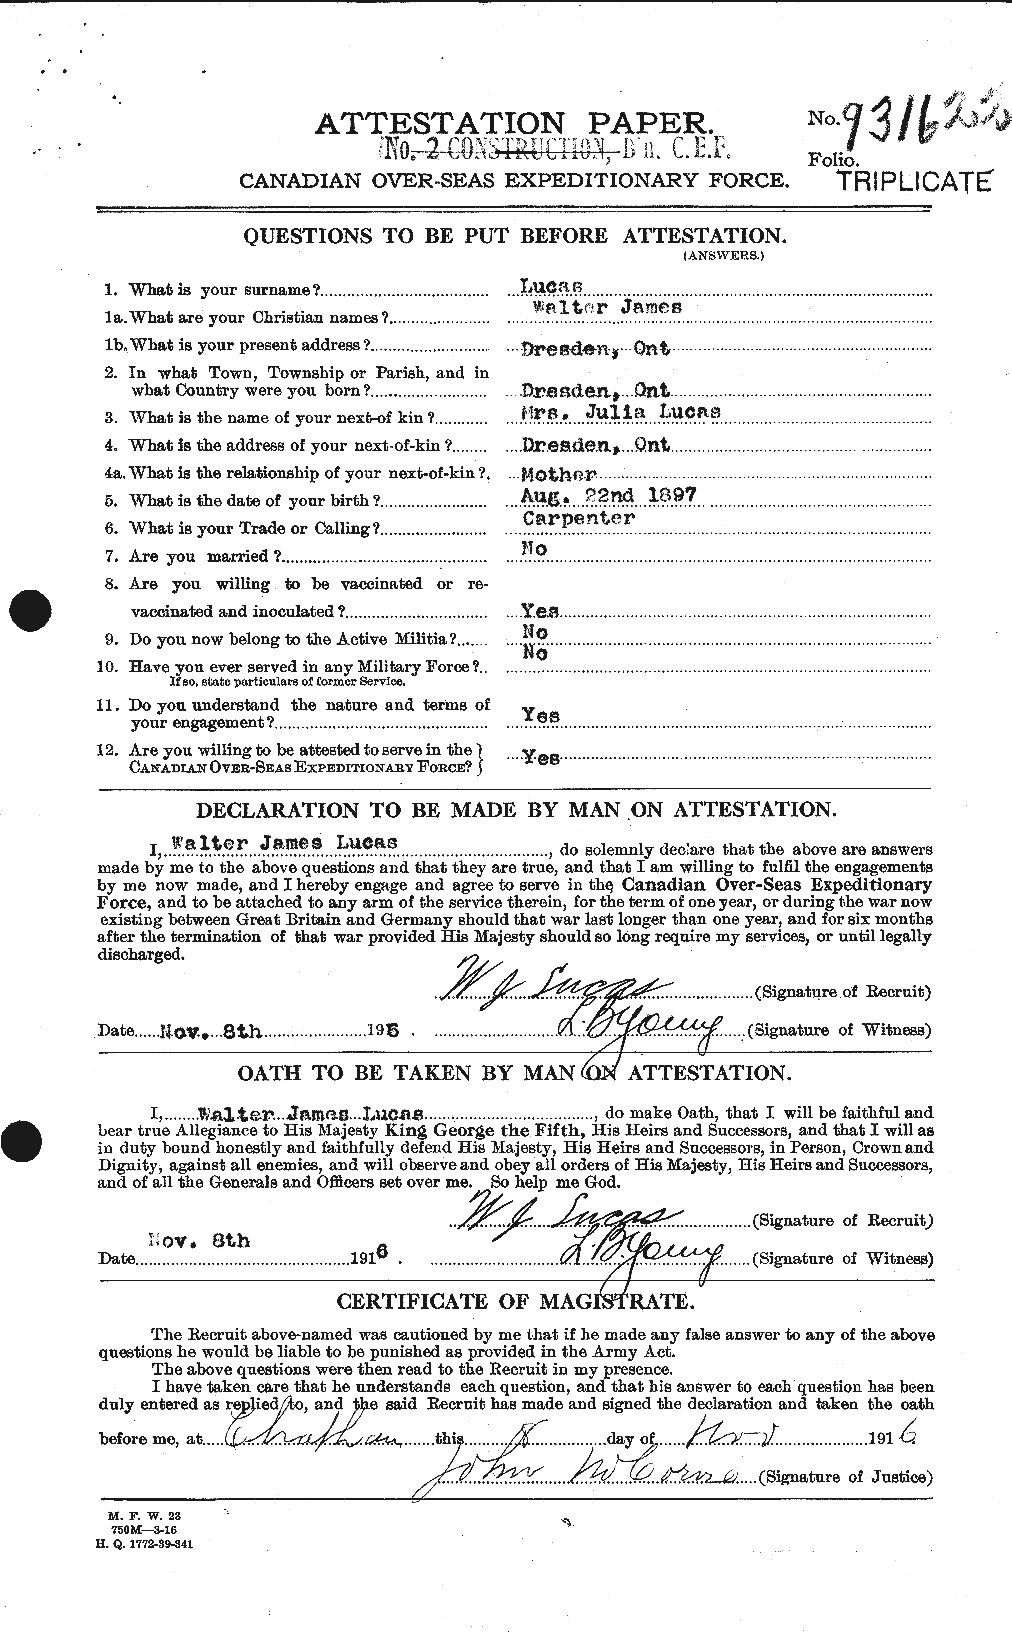 Dossiers du Personnel de la Première Guerre mondiale - CEC 478291a